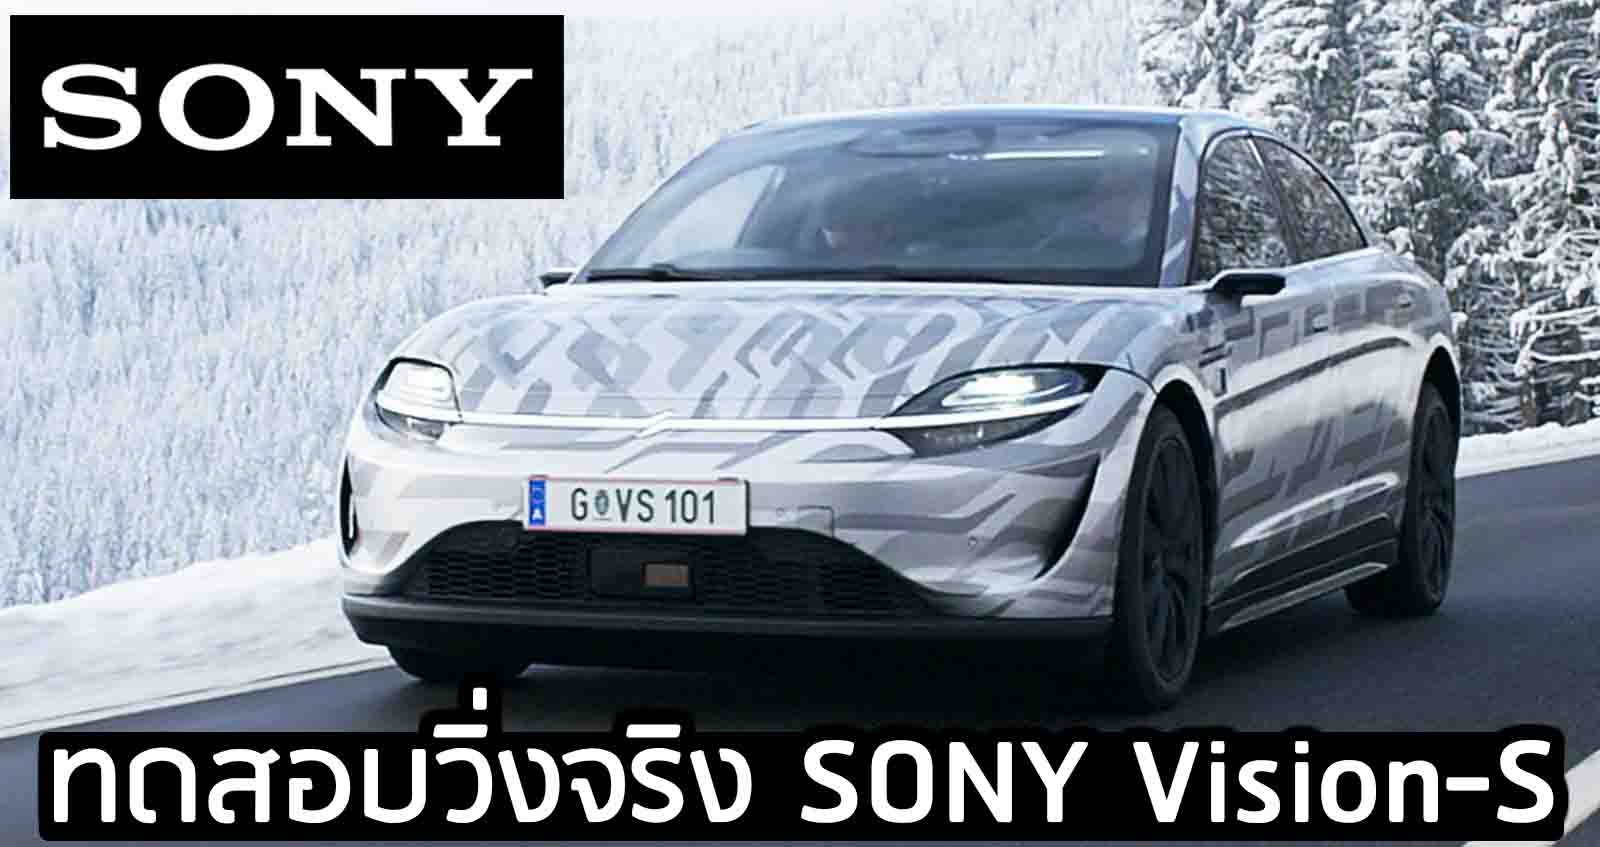 ทดสอบวิ่งจริง SONY Vision-S รถยนต์ไฟฟ้าคันแรกของค่าย